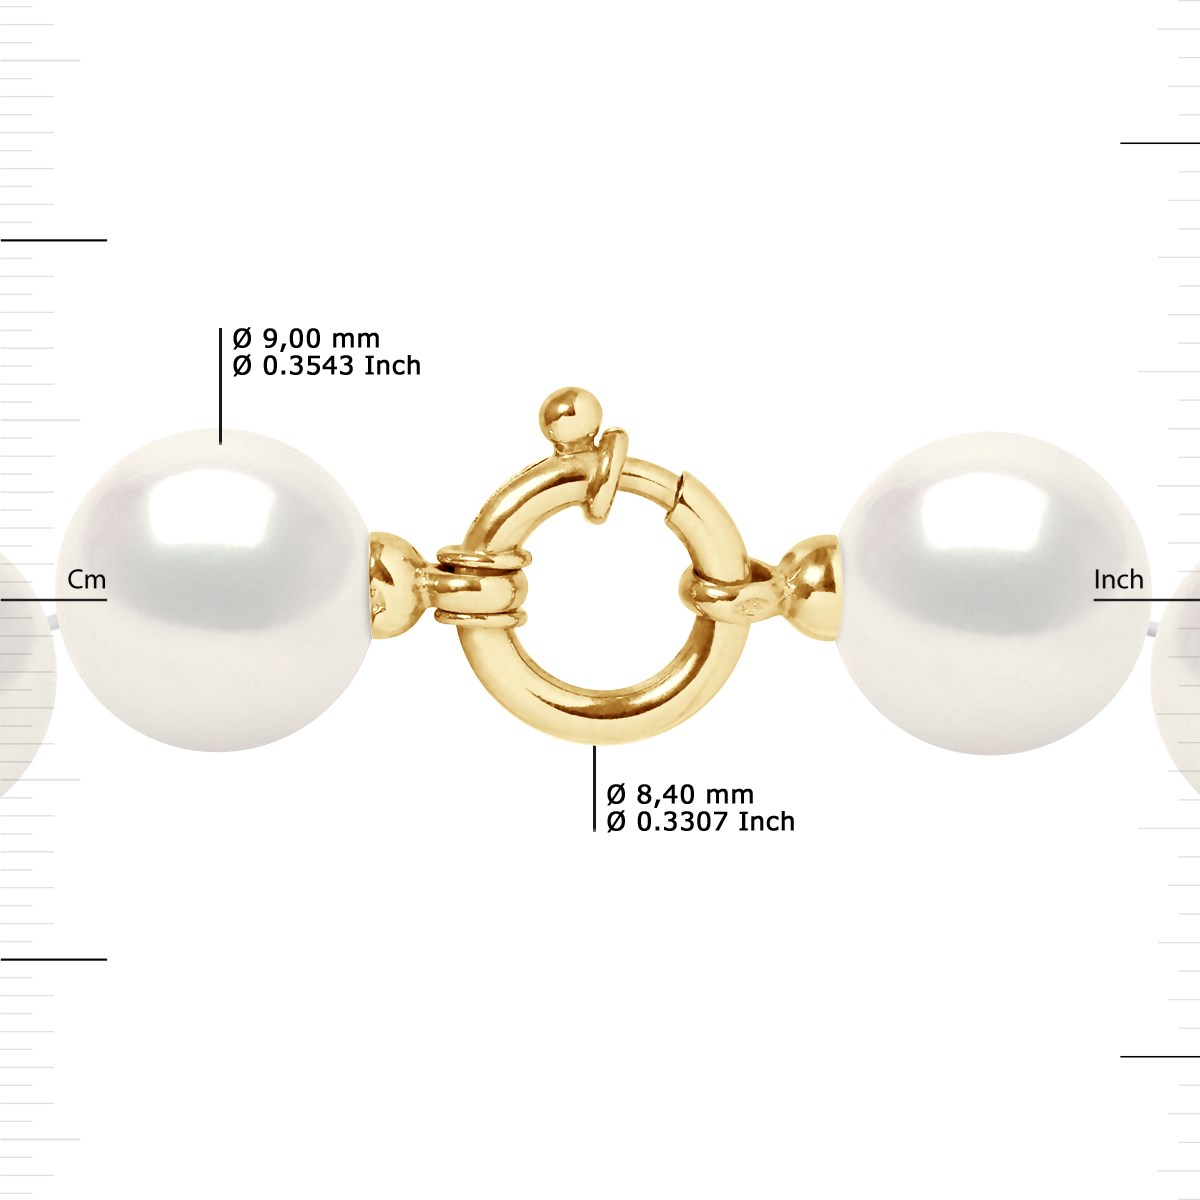 Collier Rang PRINCESSE Perles d'Eau Douce Rondes 9-10 mm Blanches Fermoir Prestige Or Jaune - vue 3